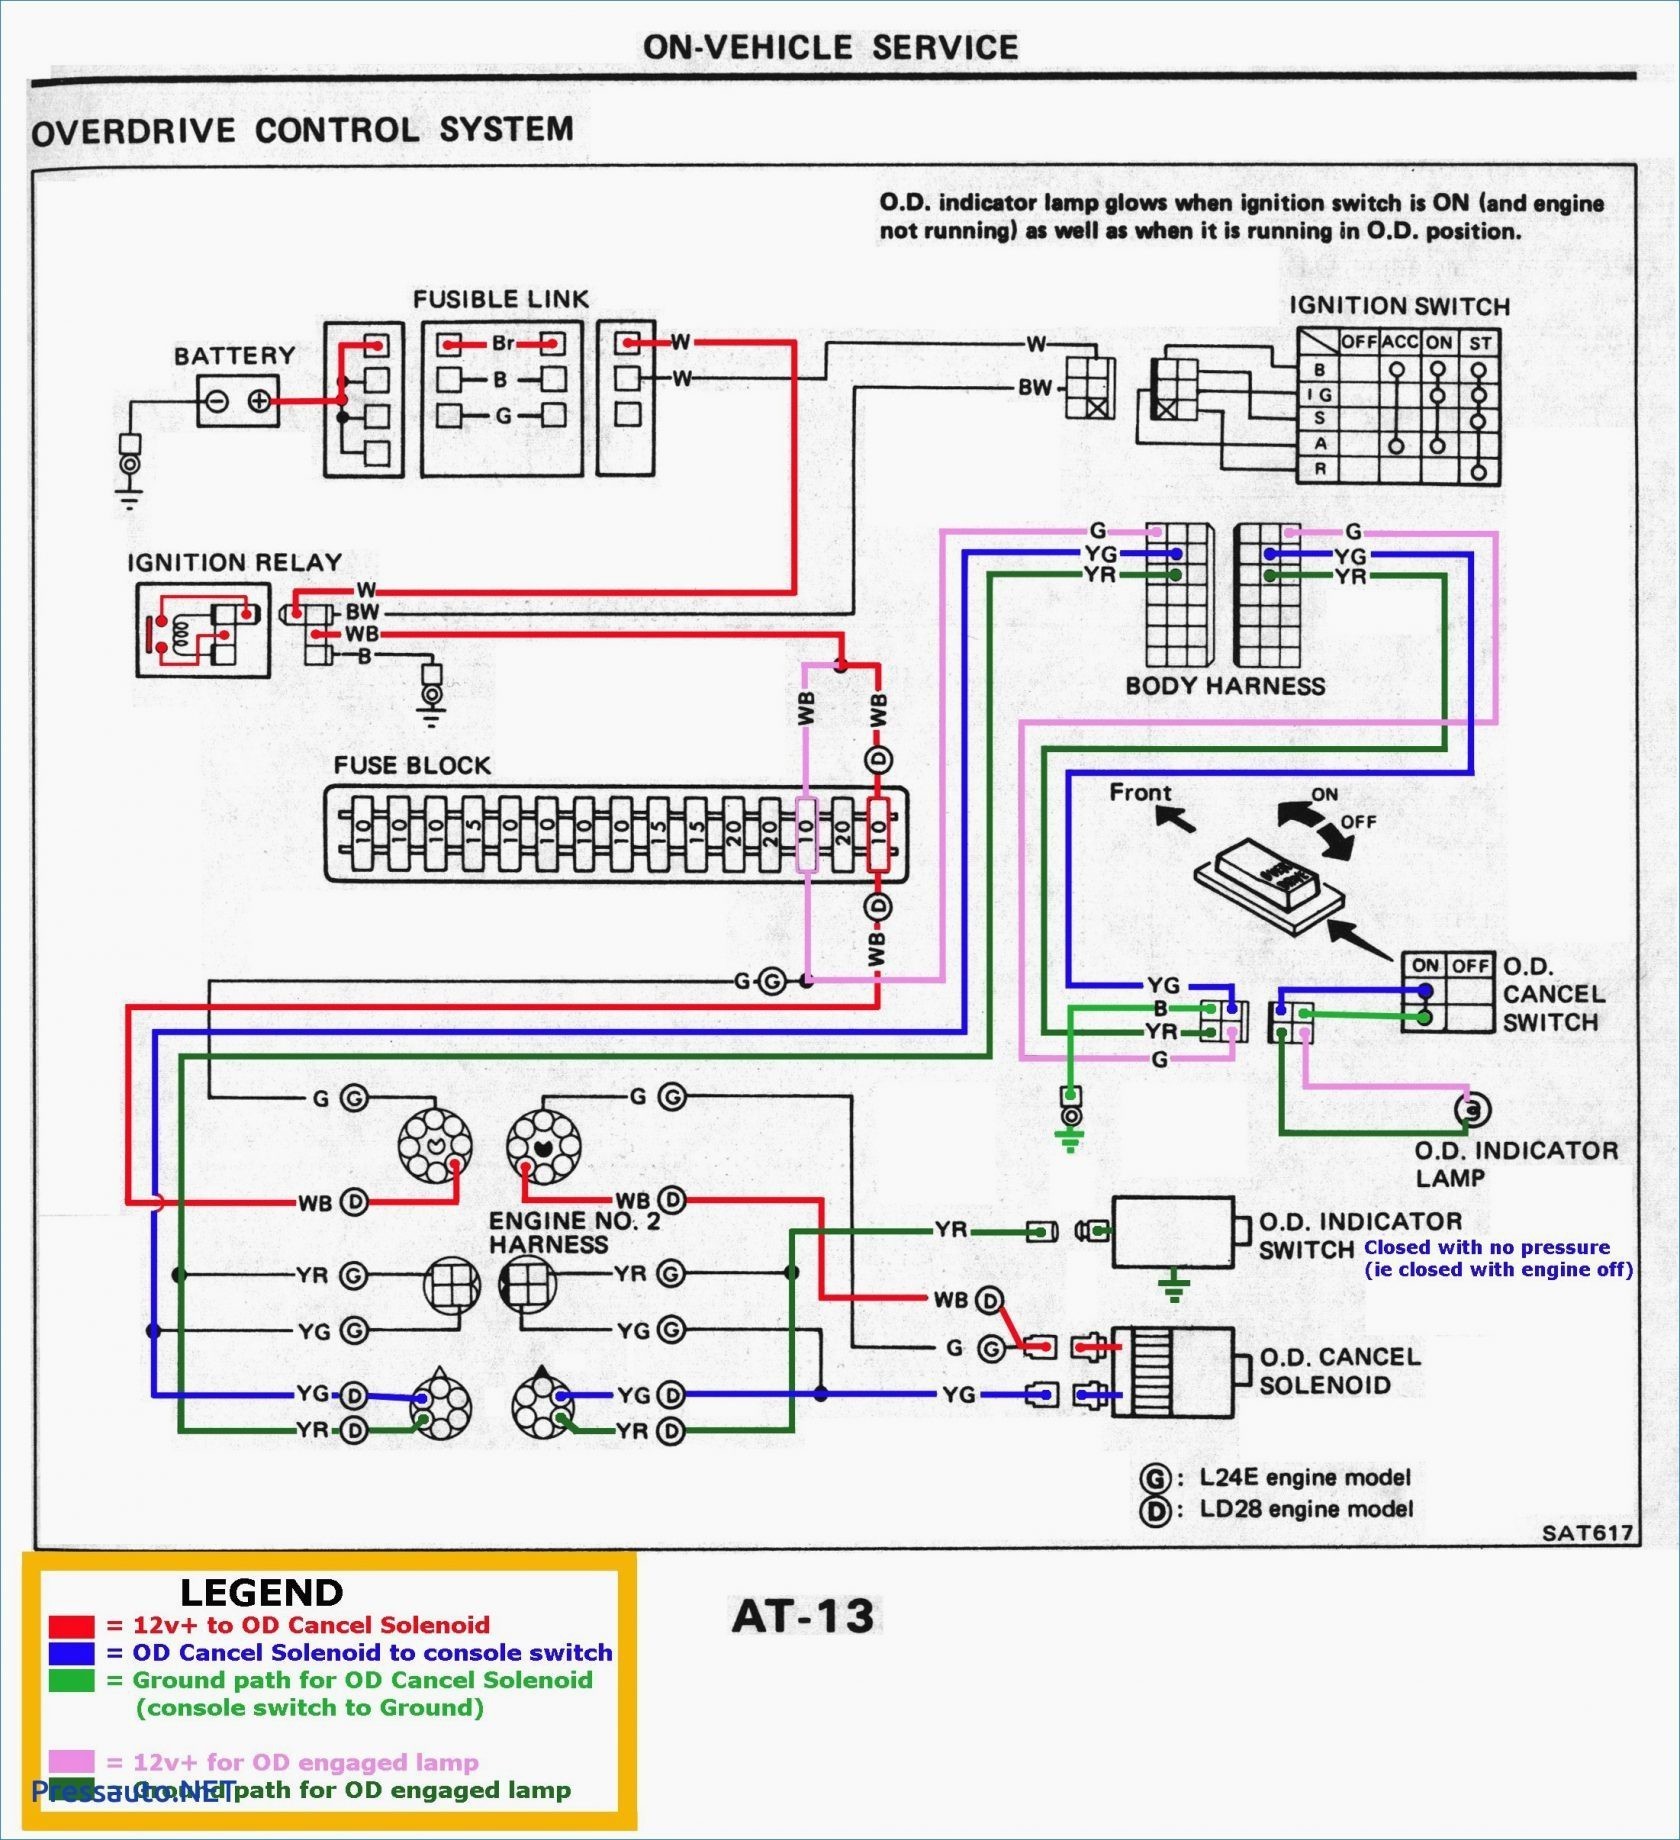 Car Audio iso Connector Diagram Subaru forester Stereo Wiring Harness Of Car Audio iso Connector Diagram